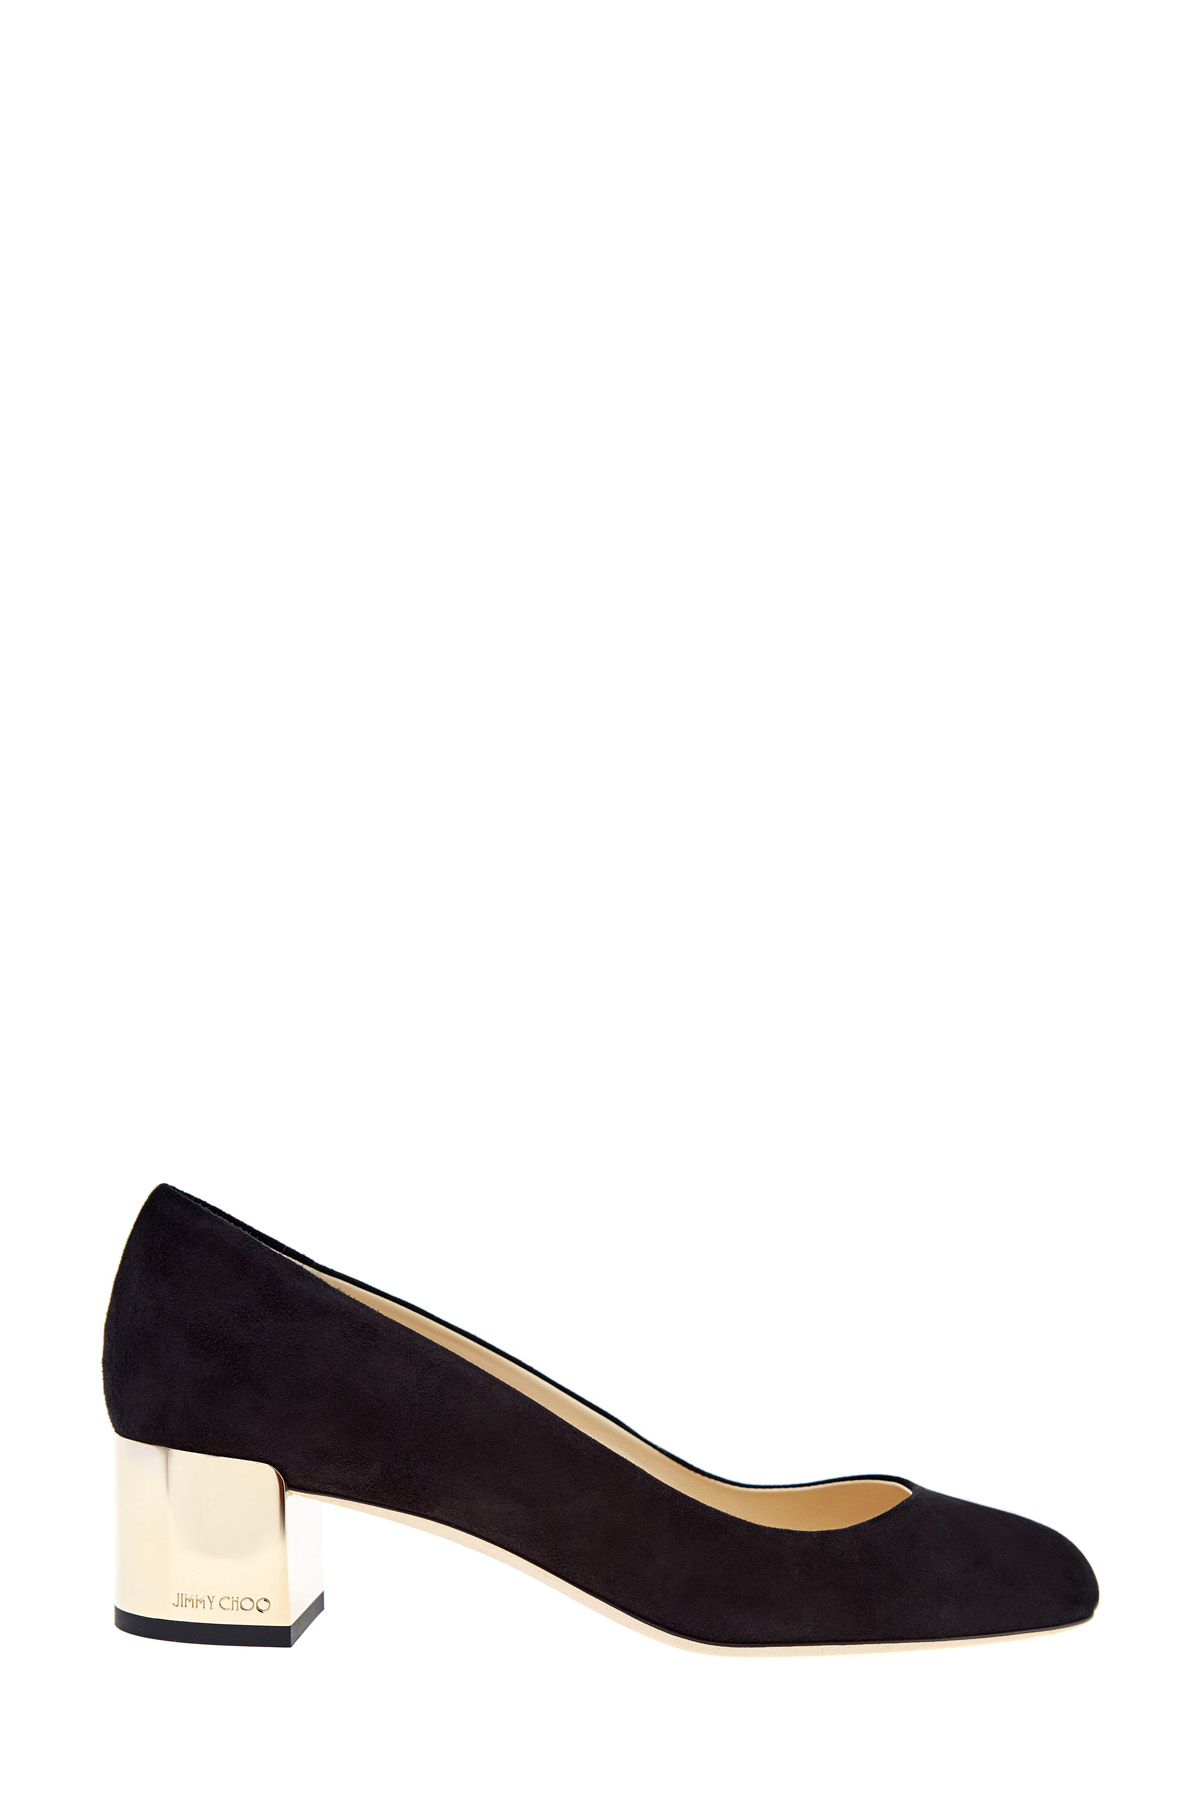 Туфли Jessie на каблуке с золотистым напылением и монограммой JIMMY CHOO, цвет черный, размер 37;37.5;38.5;39